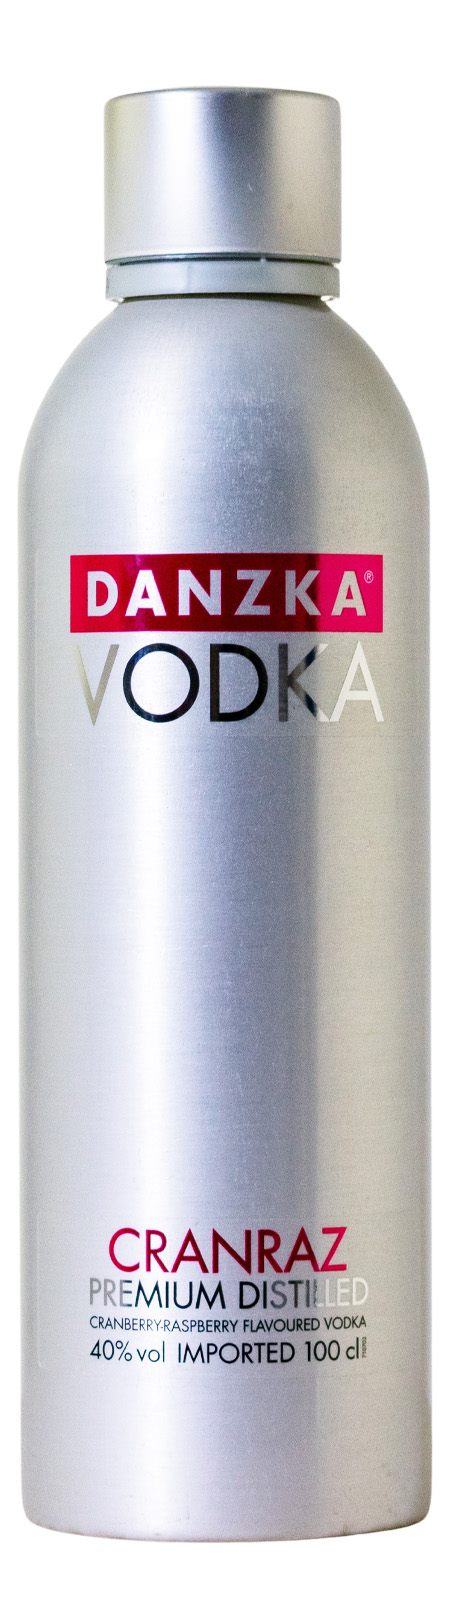 Danzka Danish Vodka Cranraz (1L) günstig kaufen